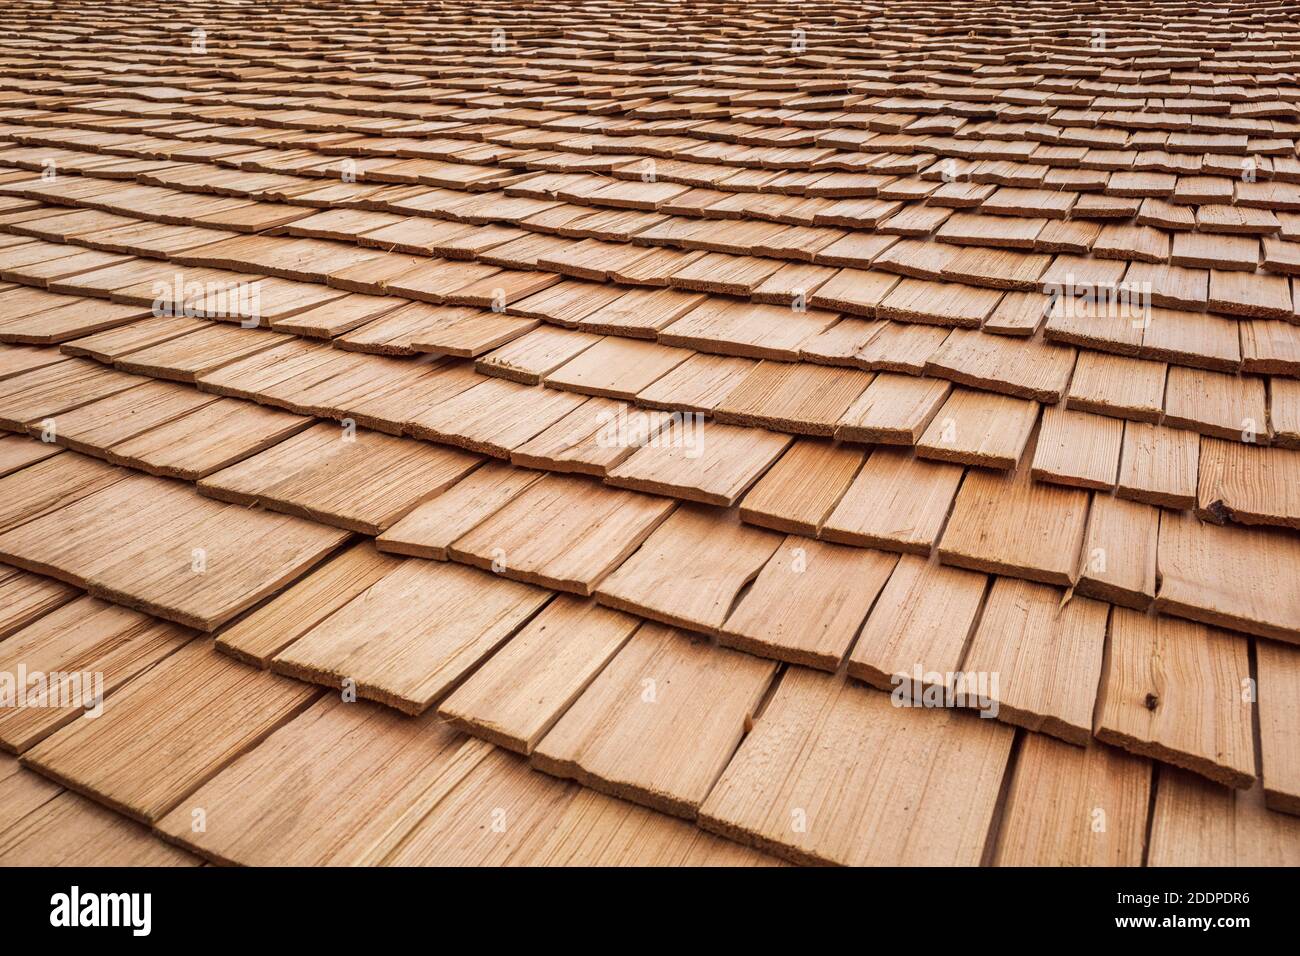 tuiles de toit en bois sur un toit Banque D'Images